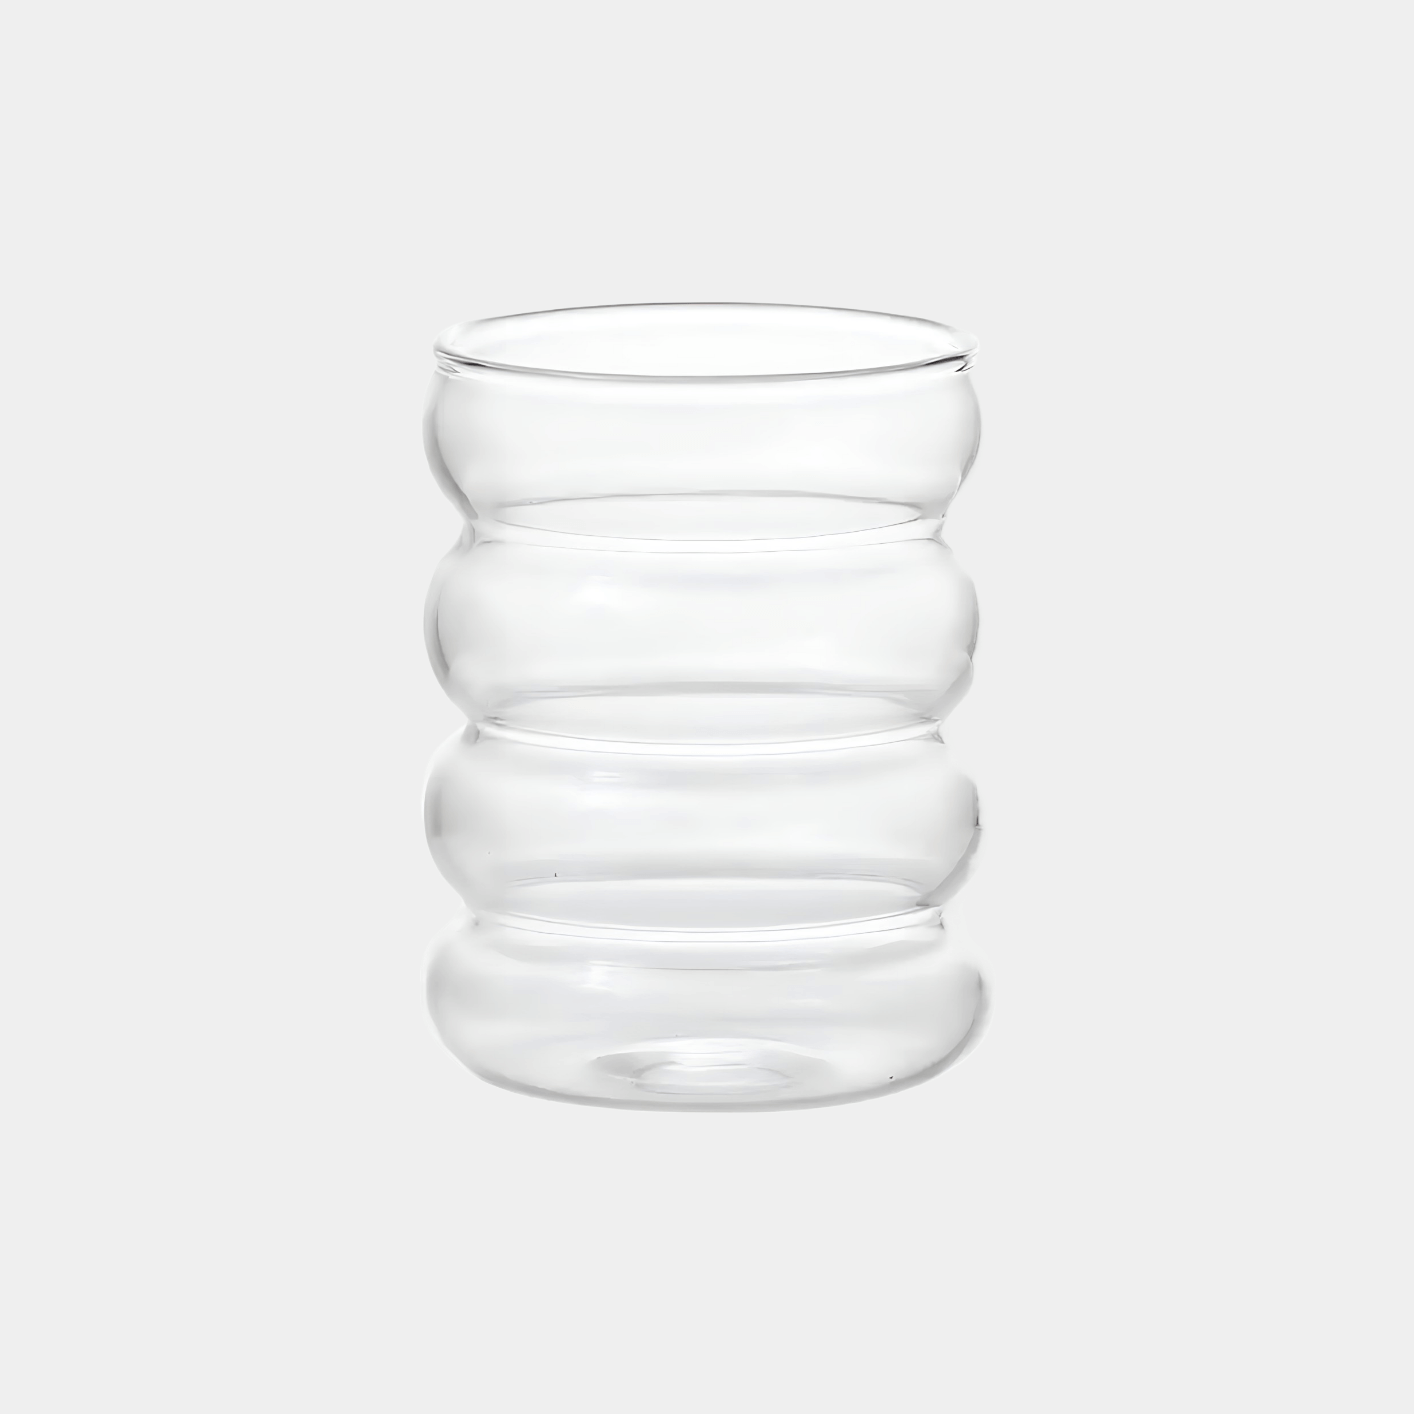 Ein stilvolles Bubble Glas | Venice Dream, präsentiert vor einem grauen Hintergrund - Luxuriöses Trinkglas mit einem einzigartigen, gewölbten Bubble Design und ästhetischem Appeal. Handgefertigt für ein einzigartiges Trinkerlebnis mit kalt- und heißen Getränken. Perfekt für Cocktails, Kaffee oder erfrischende Säfte. Attraktiv und edel, ideal für den täglichen Gebrauch oder besondere Anlässe. Erleben Sie Frische und Eleganz mit diesem hochwertigen, einzigartigen Glas.